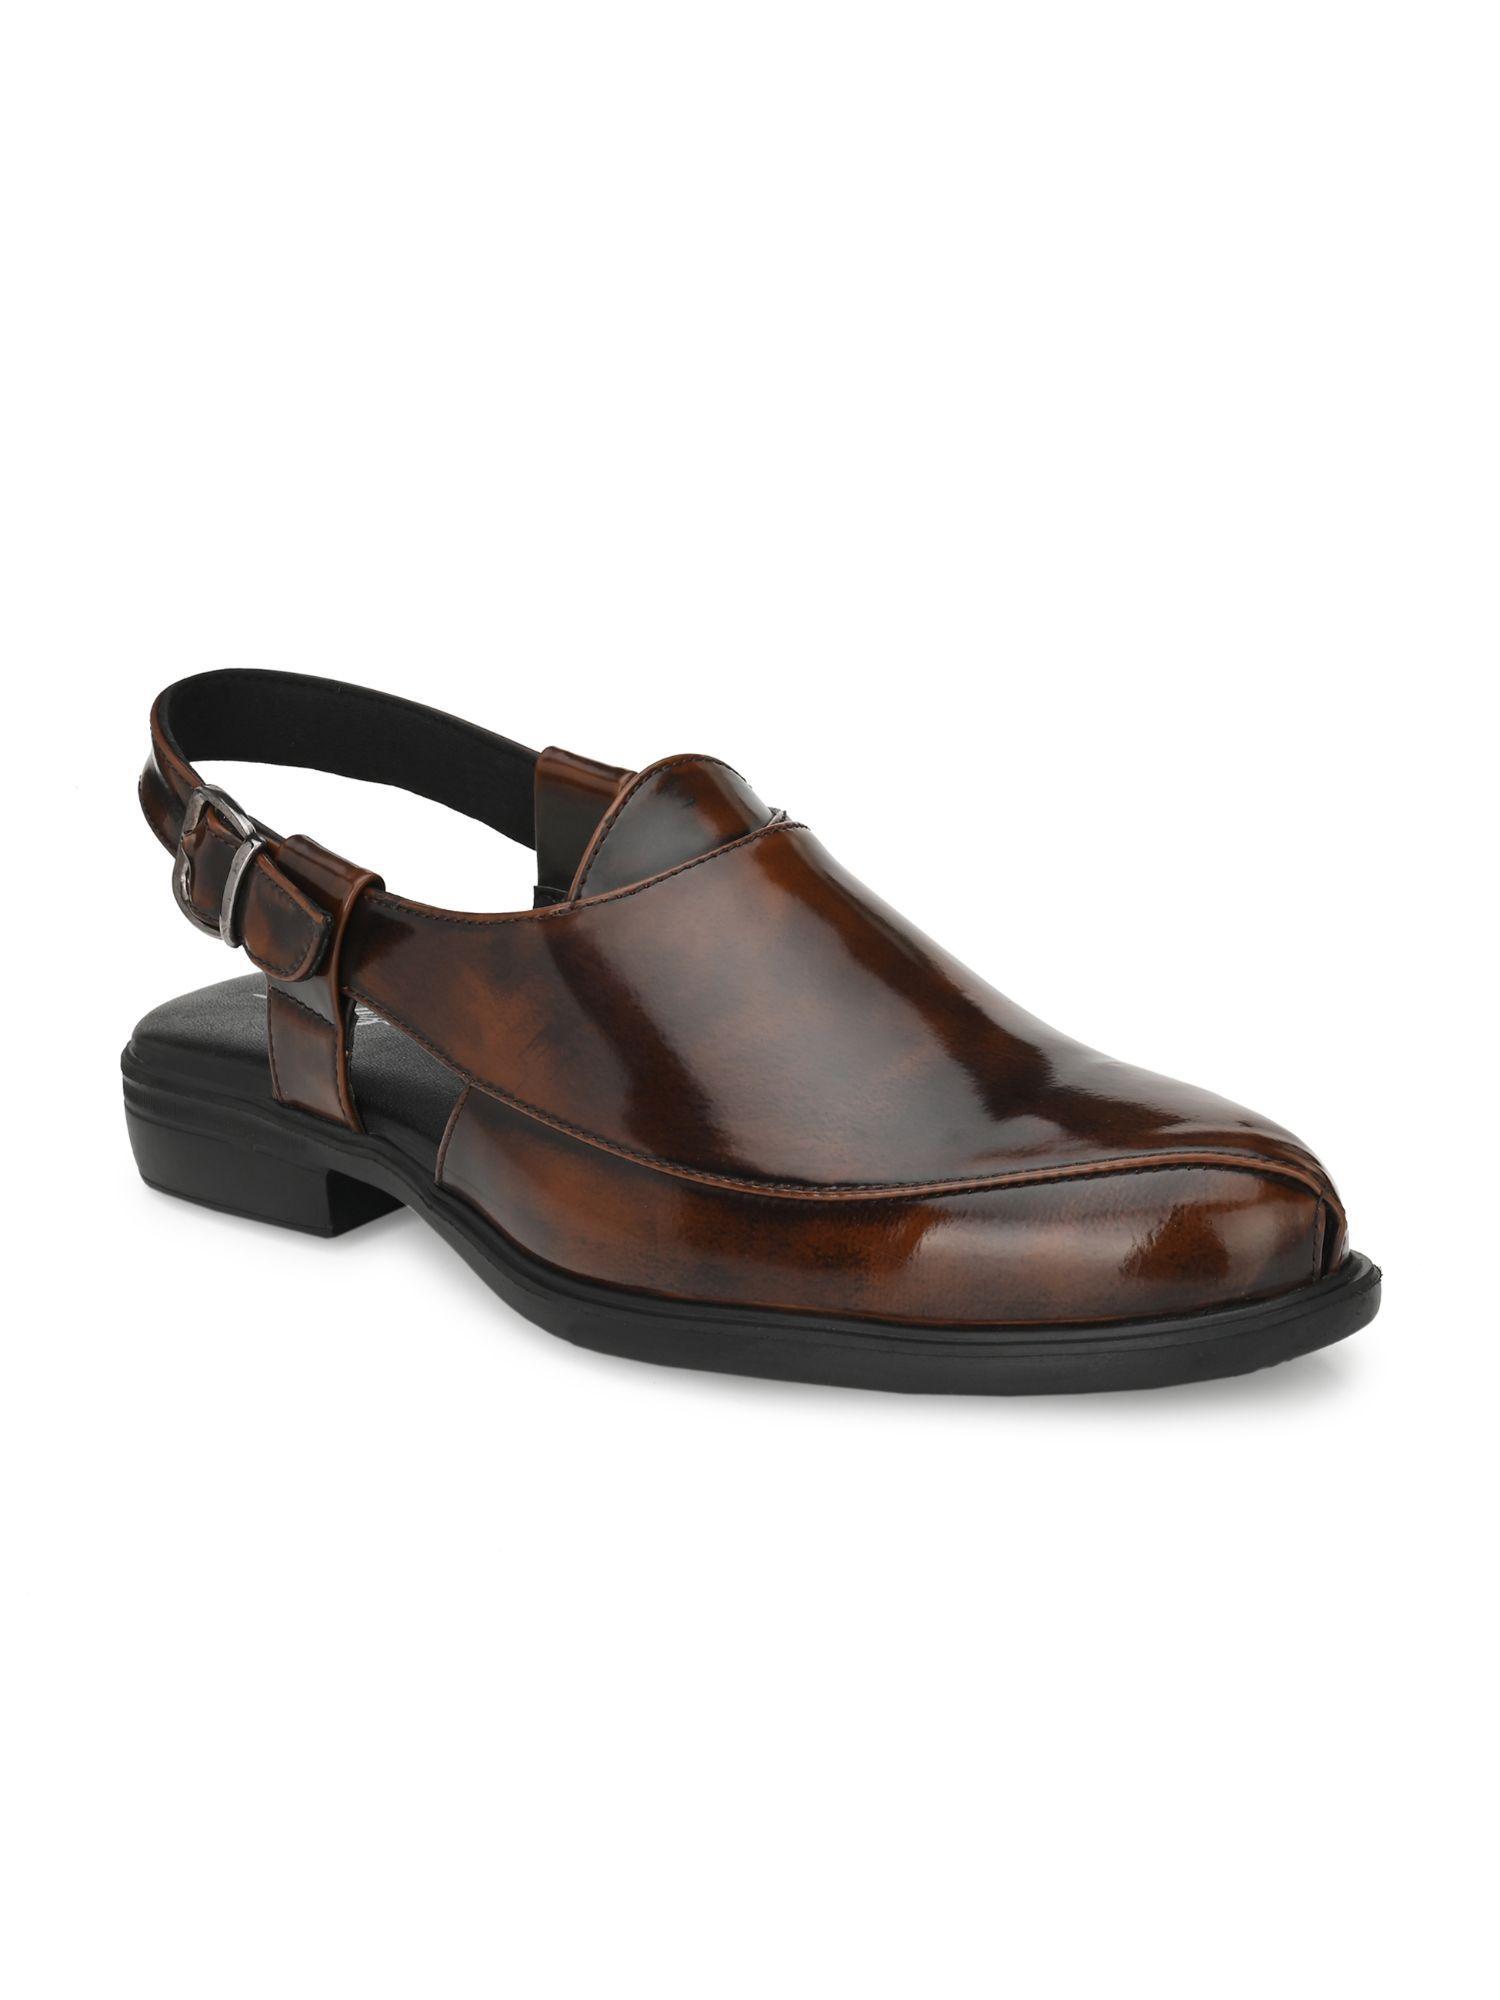 mens brown roman casual sandals